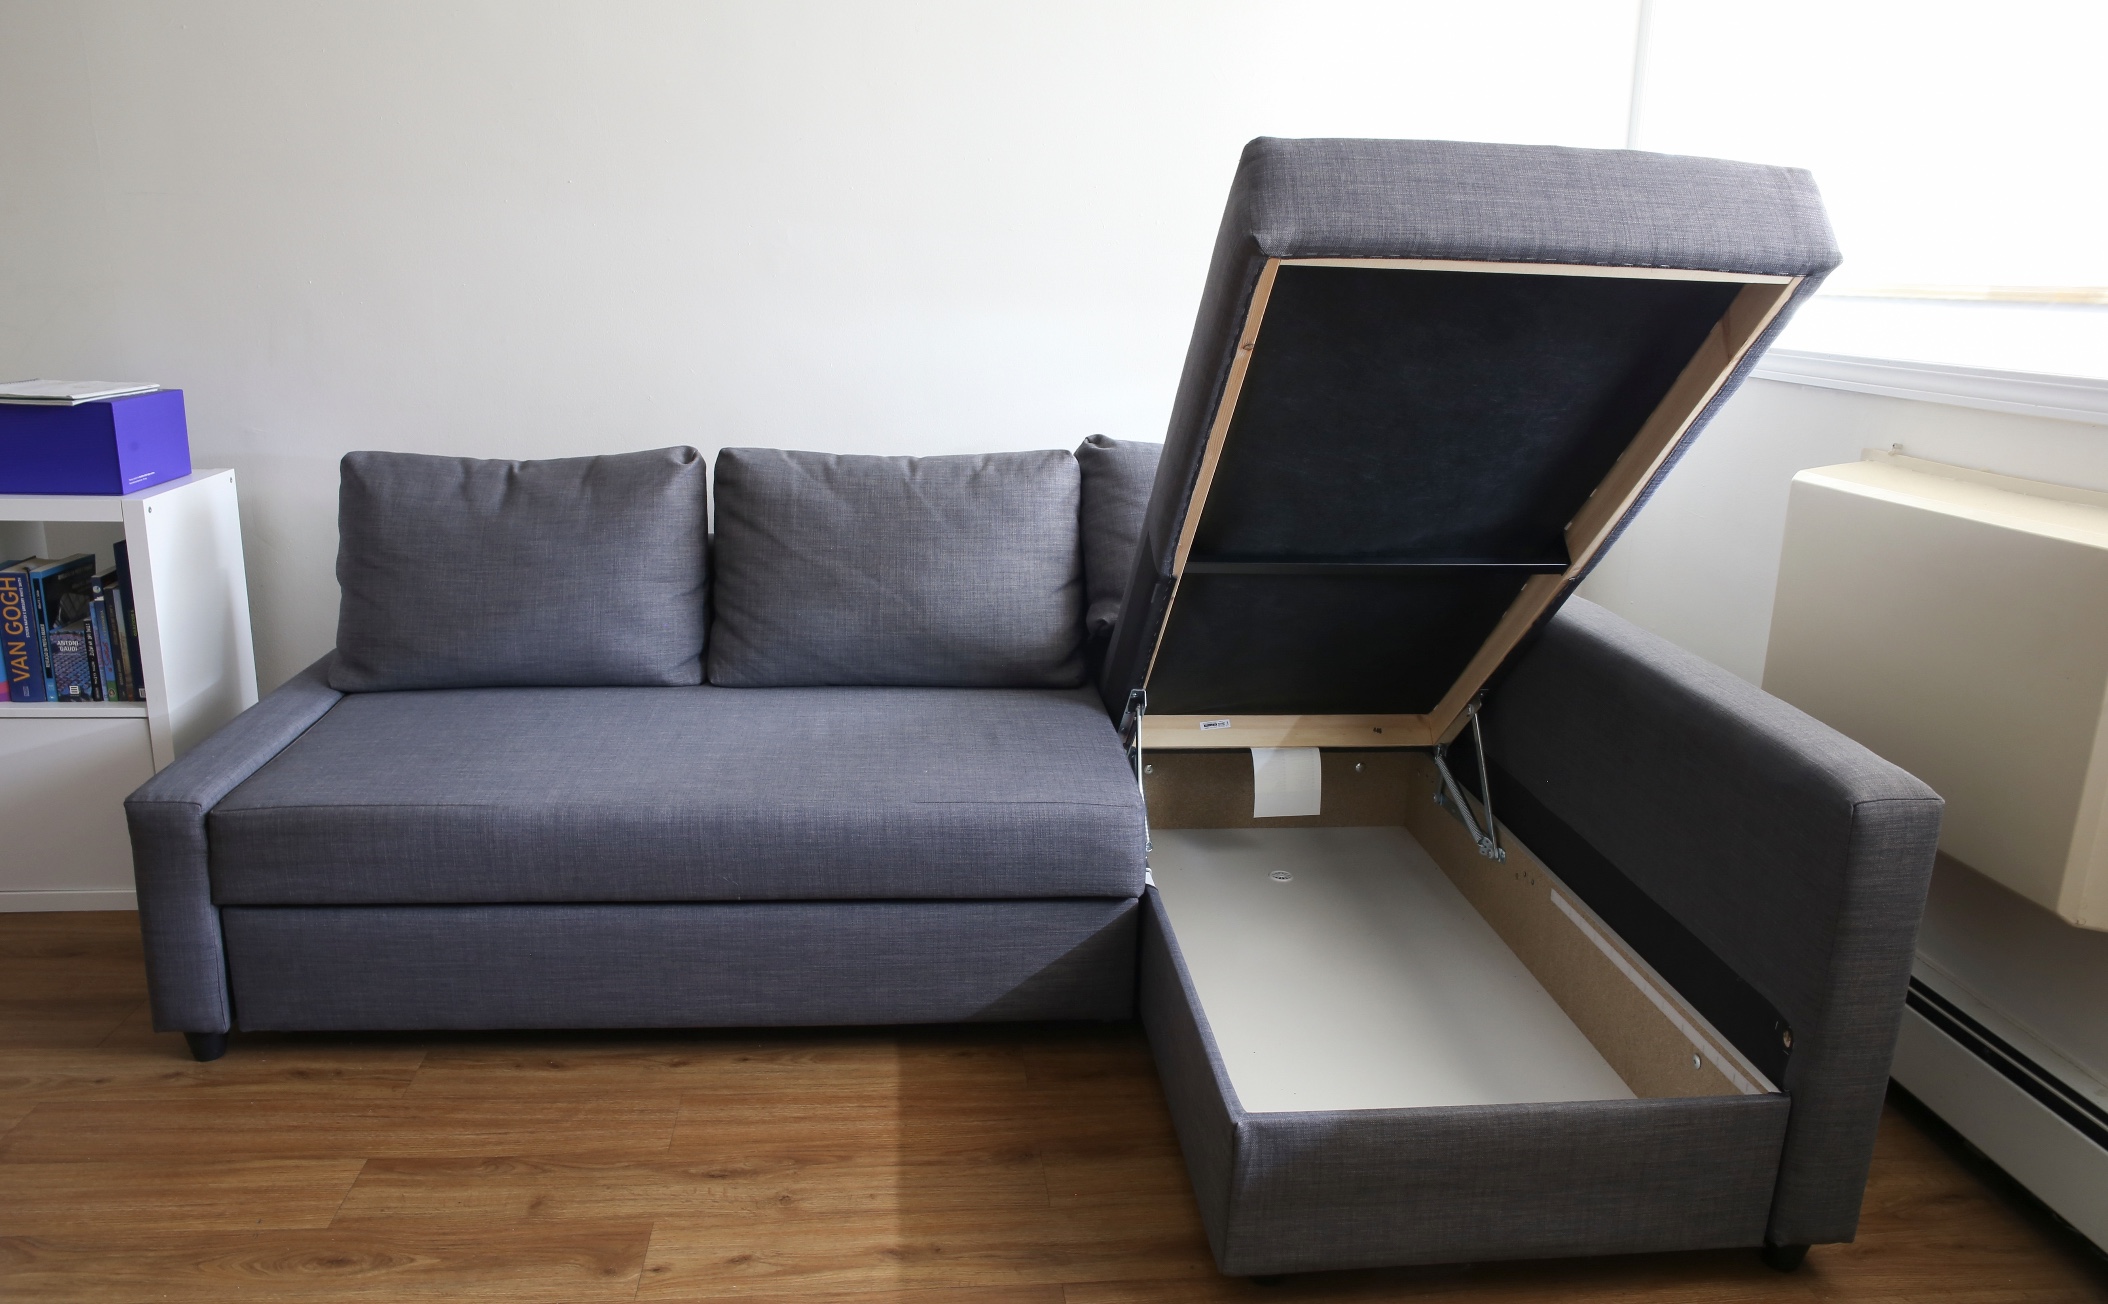 γωνιακός καναπές αποθηκευτικός χώρος